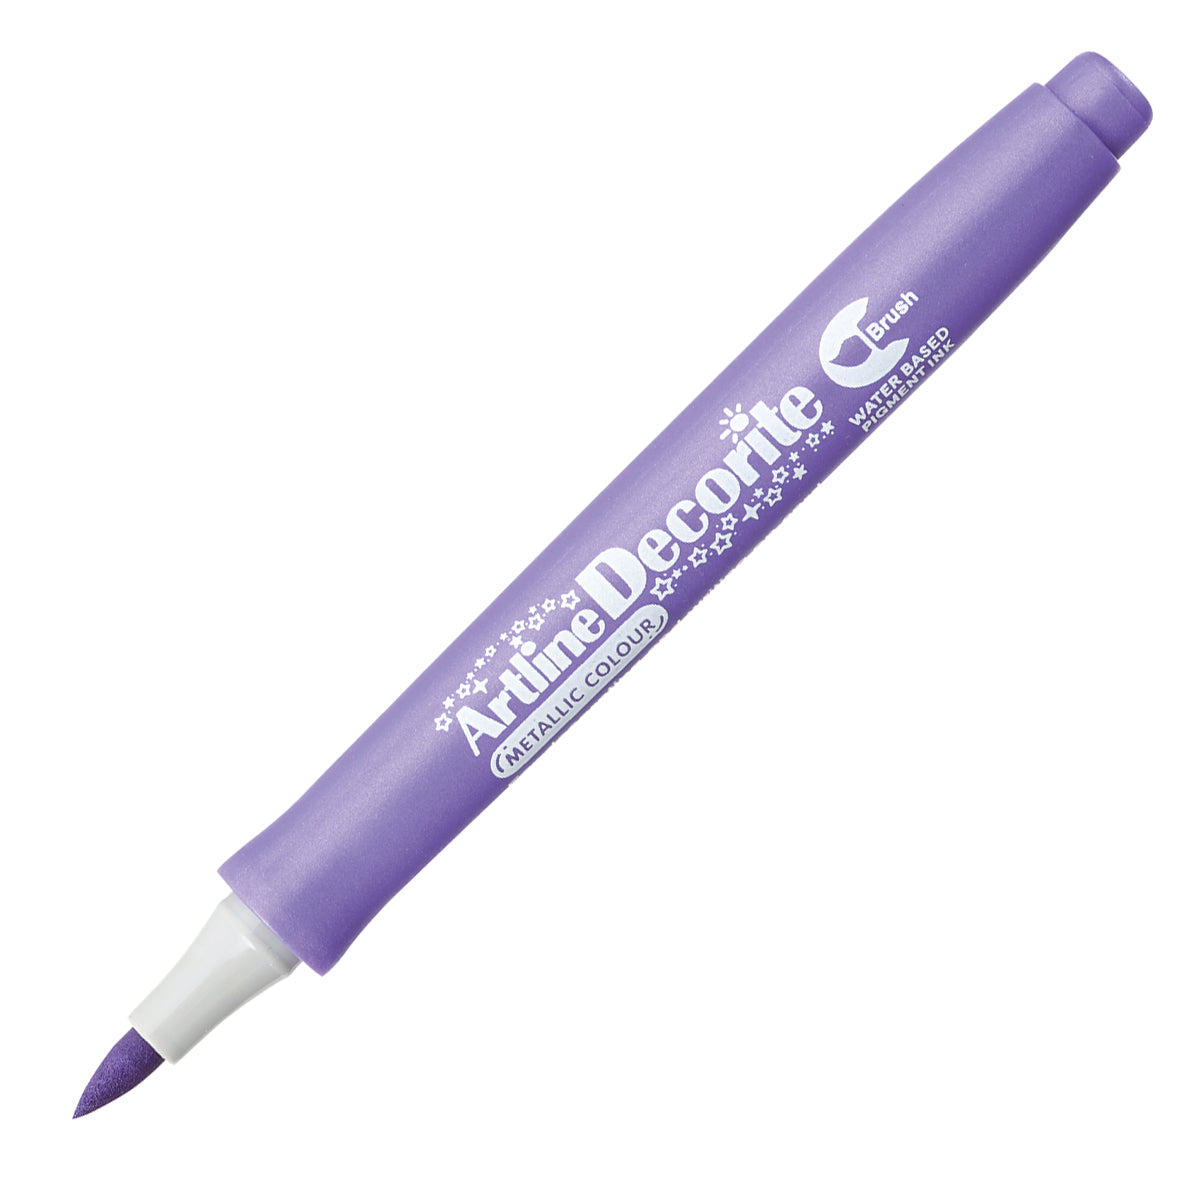 ARTLINE Decorite Brush F-Metallic Purple